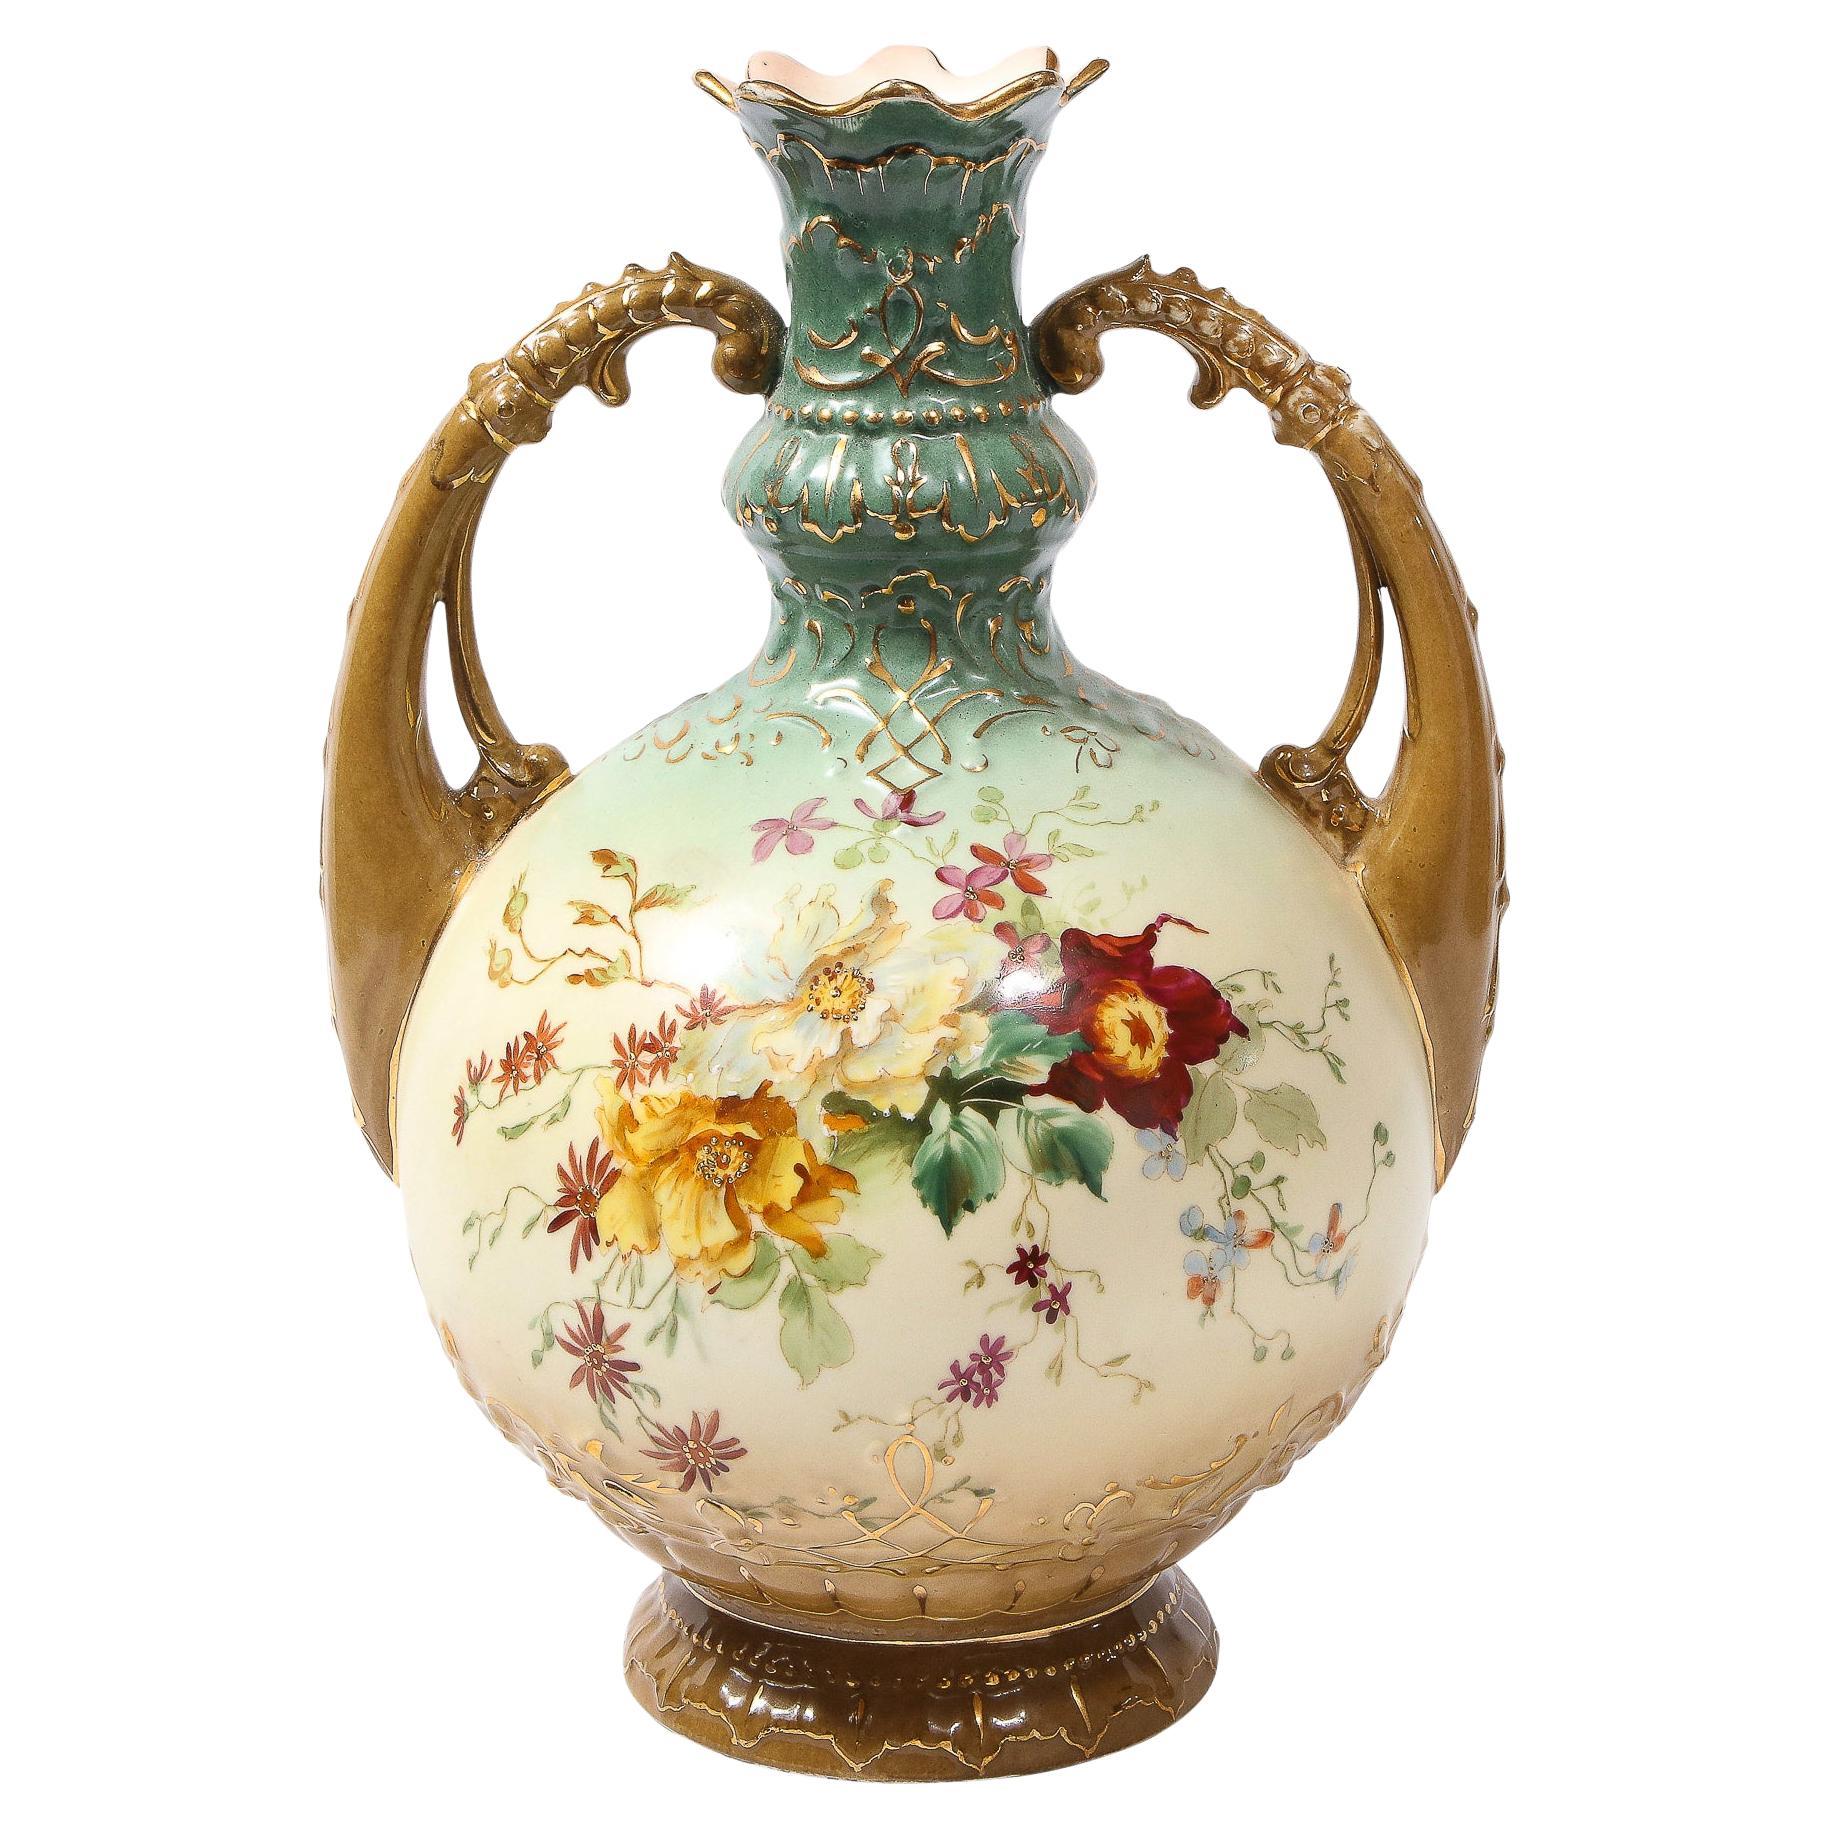 Austrian Antique Art Nouveau Hand Painted Handled Vase by EW